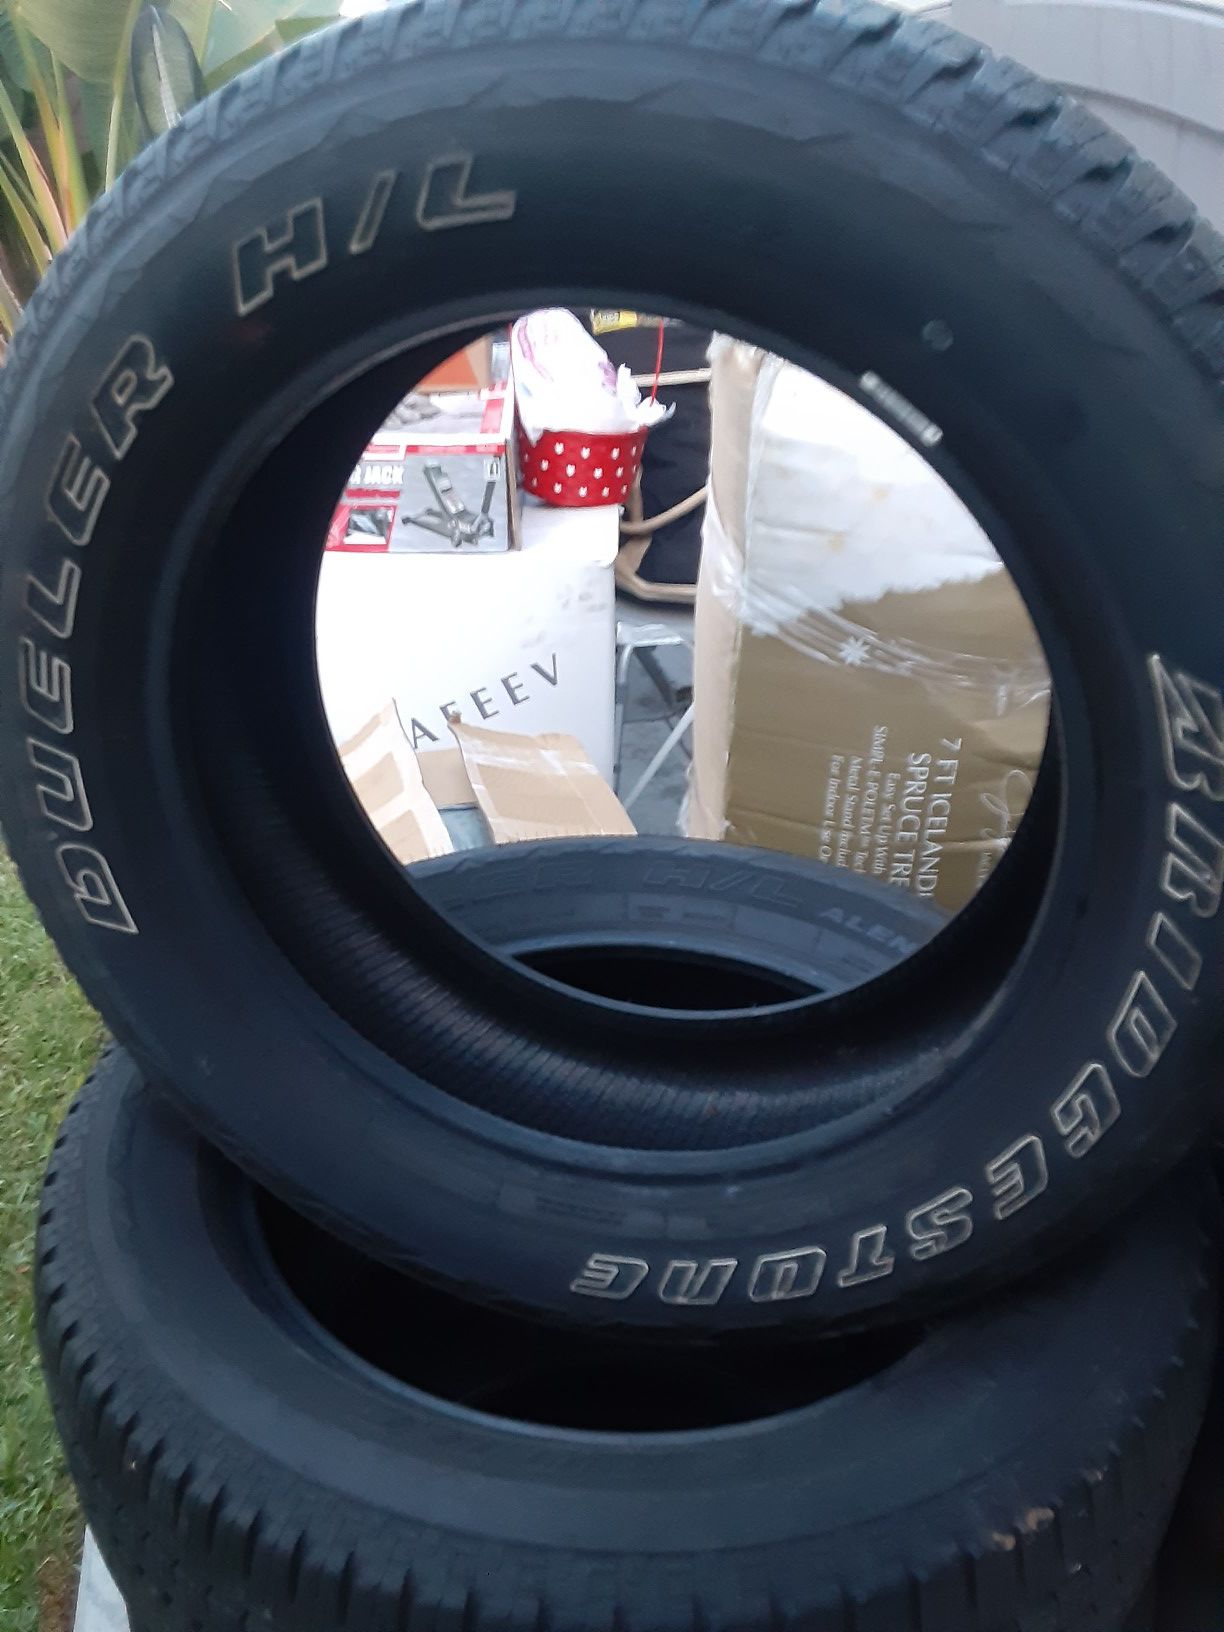 275/55/20 Bridgestone dueler tires